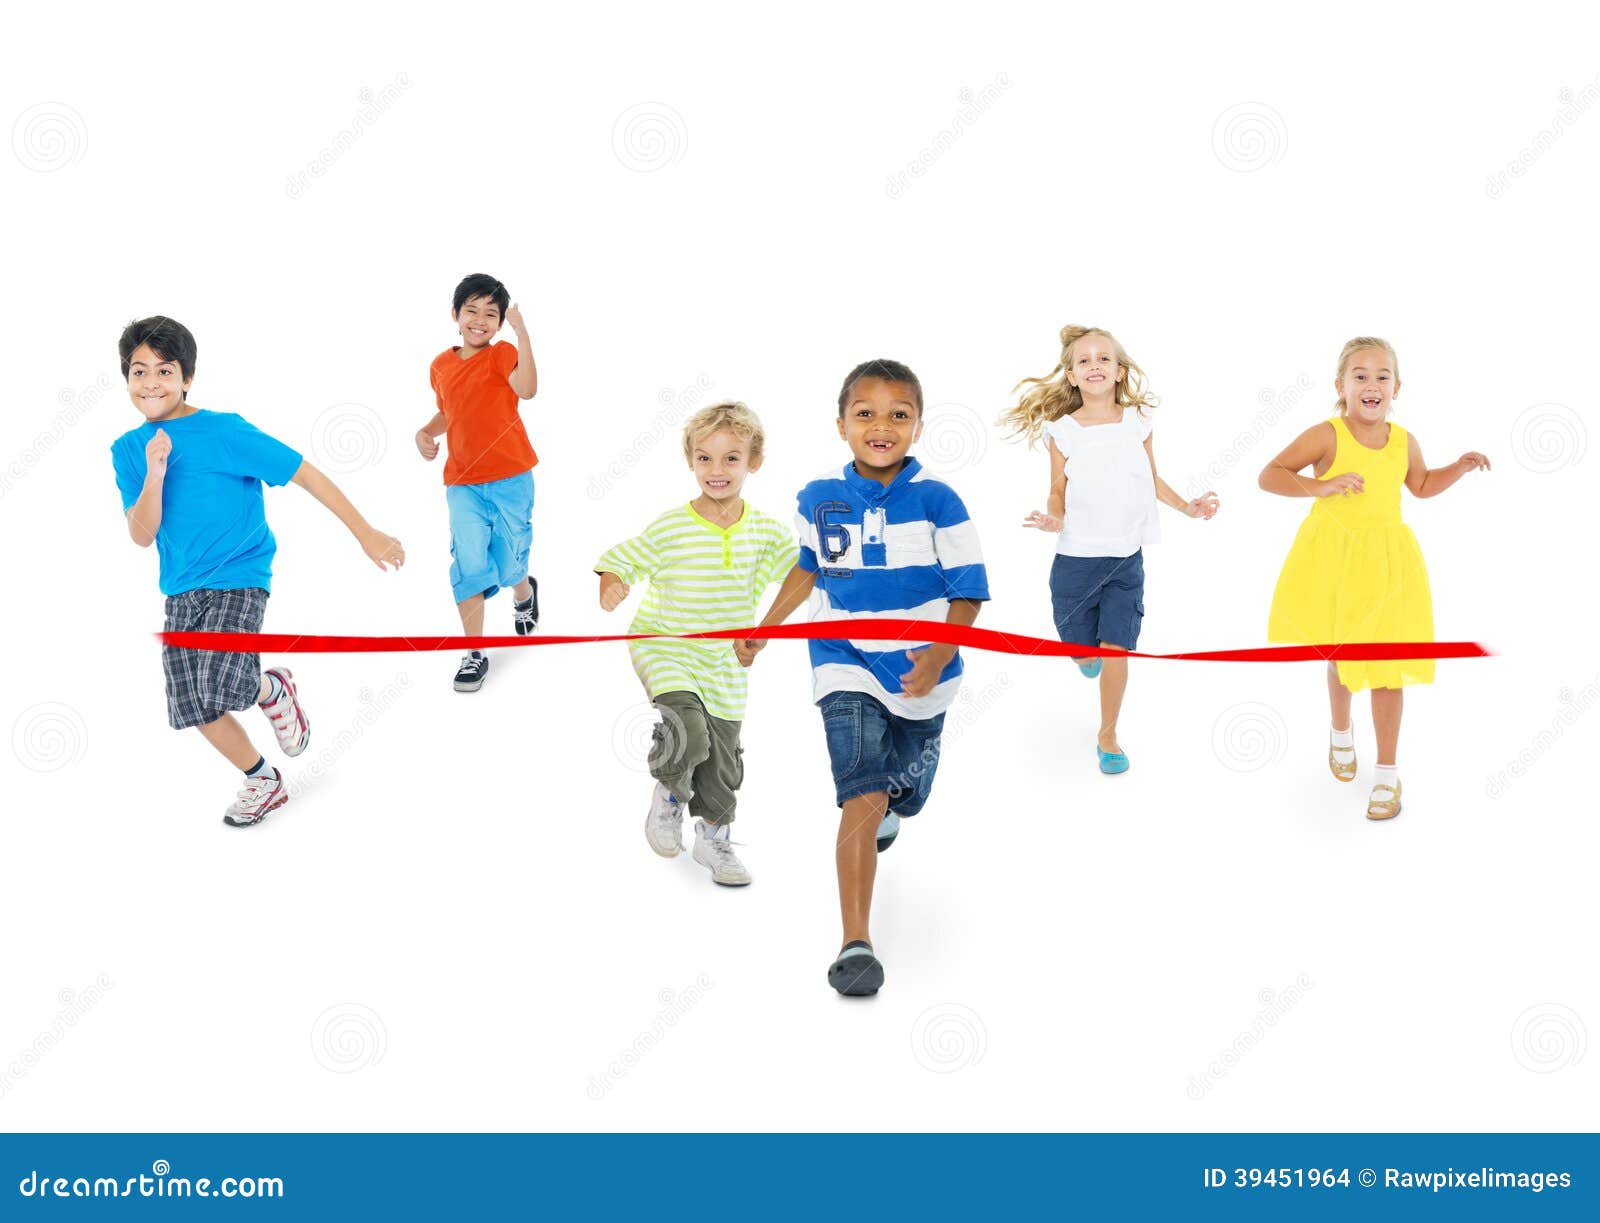 kids finish line